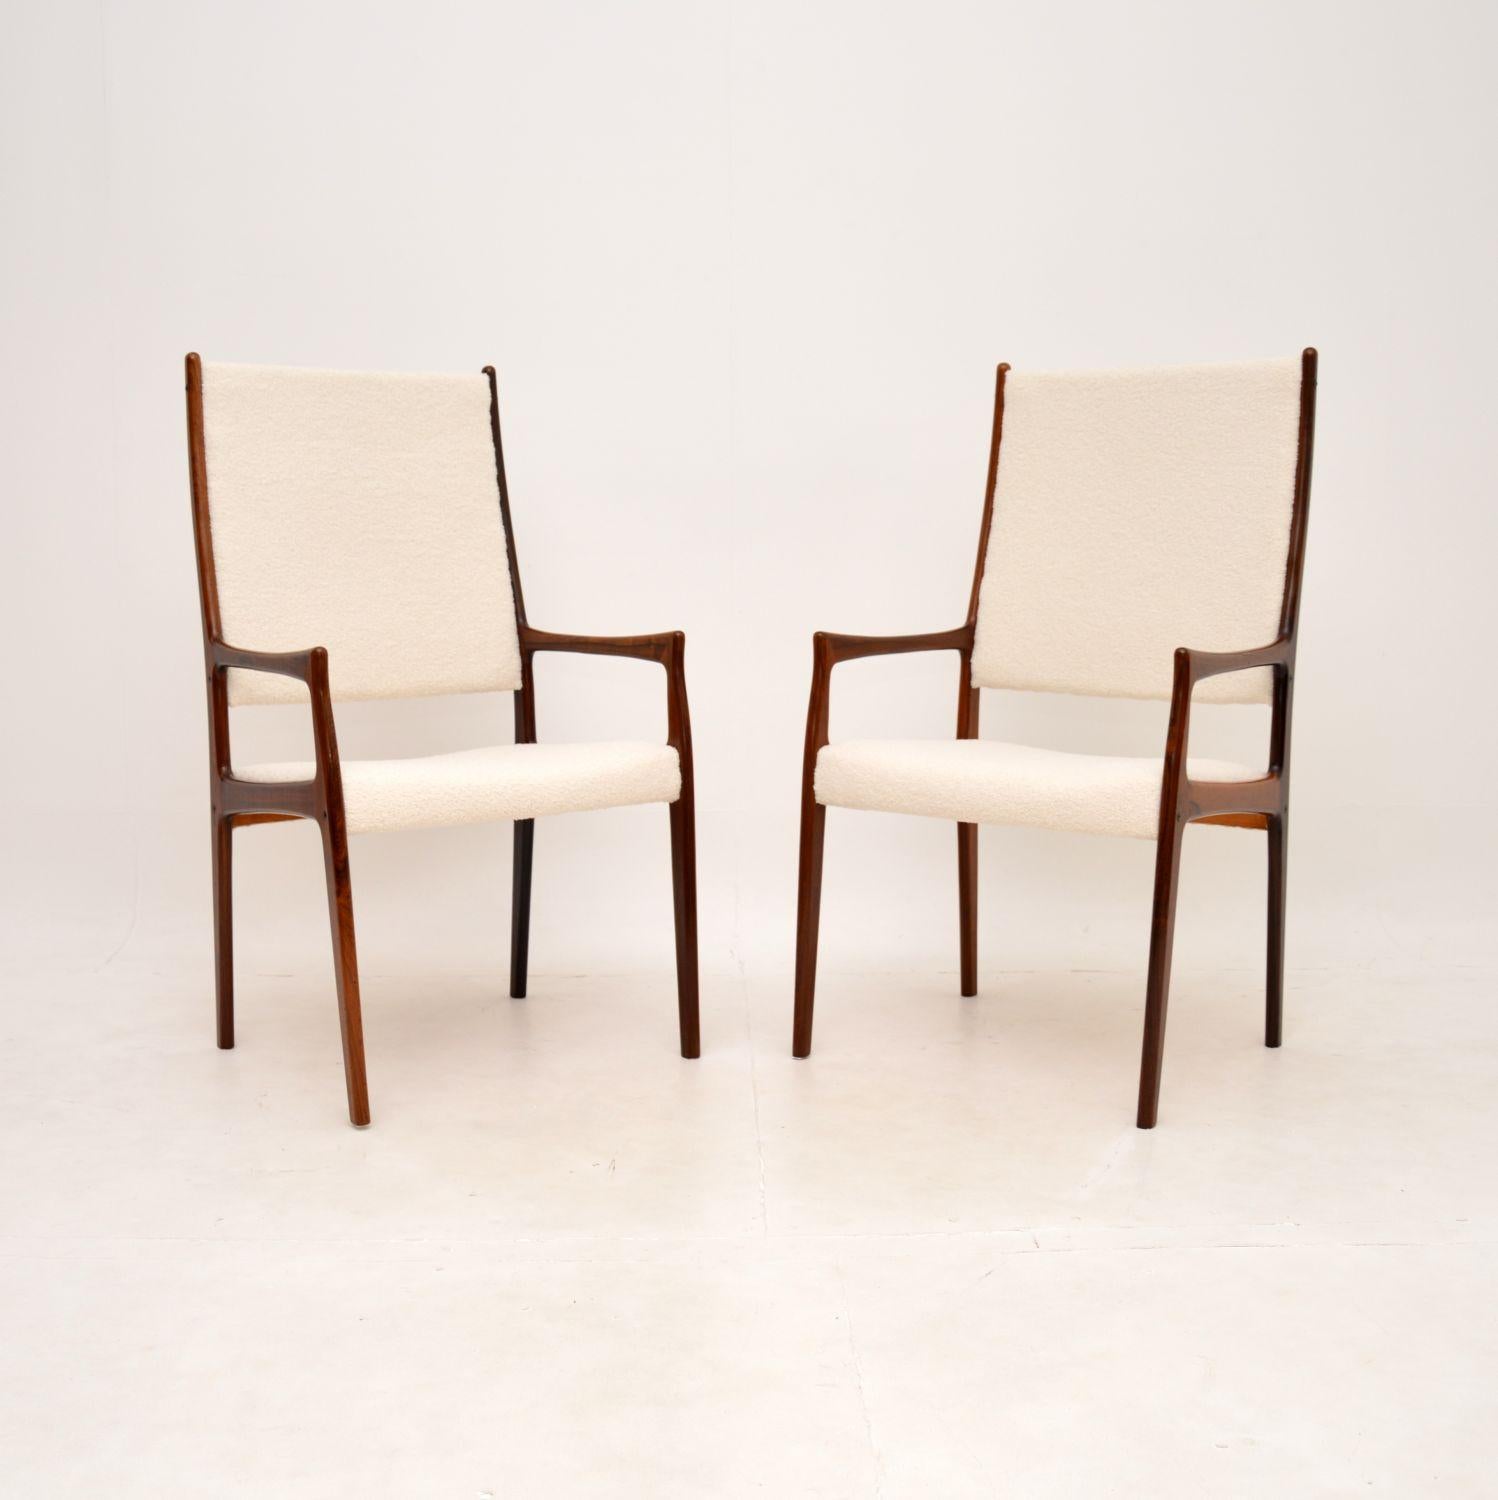 Une paire étonnante et très impressionnante de fauteuils vintage danois par Johannes Andersen. Ils ont été fabriqués au Danemark dans les années 1960.

La qualité est exceptionnelle, les cadres ont des motifs de grain et des tons de couleur